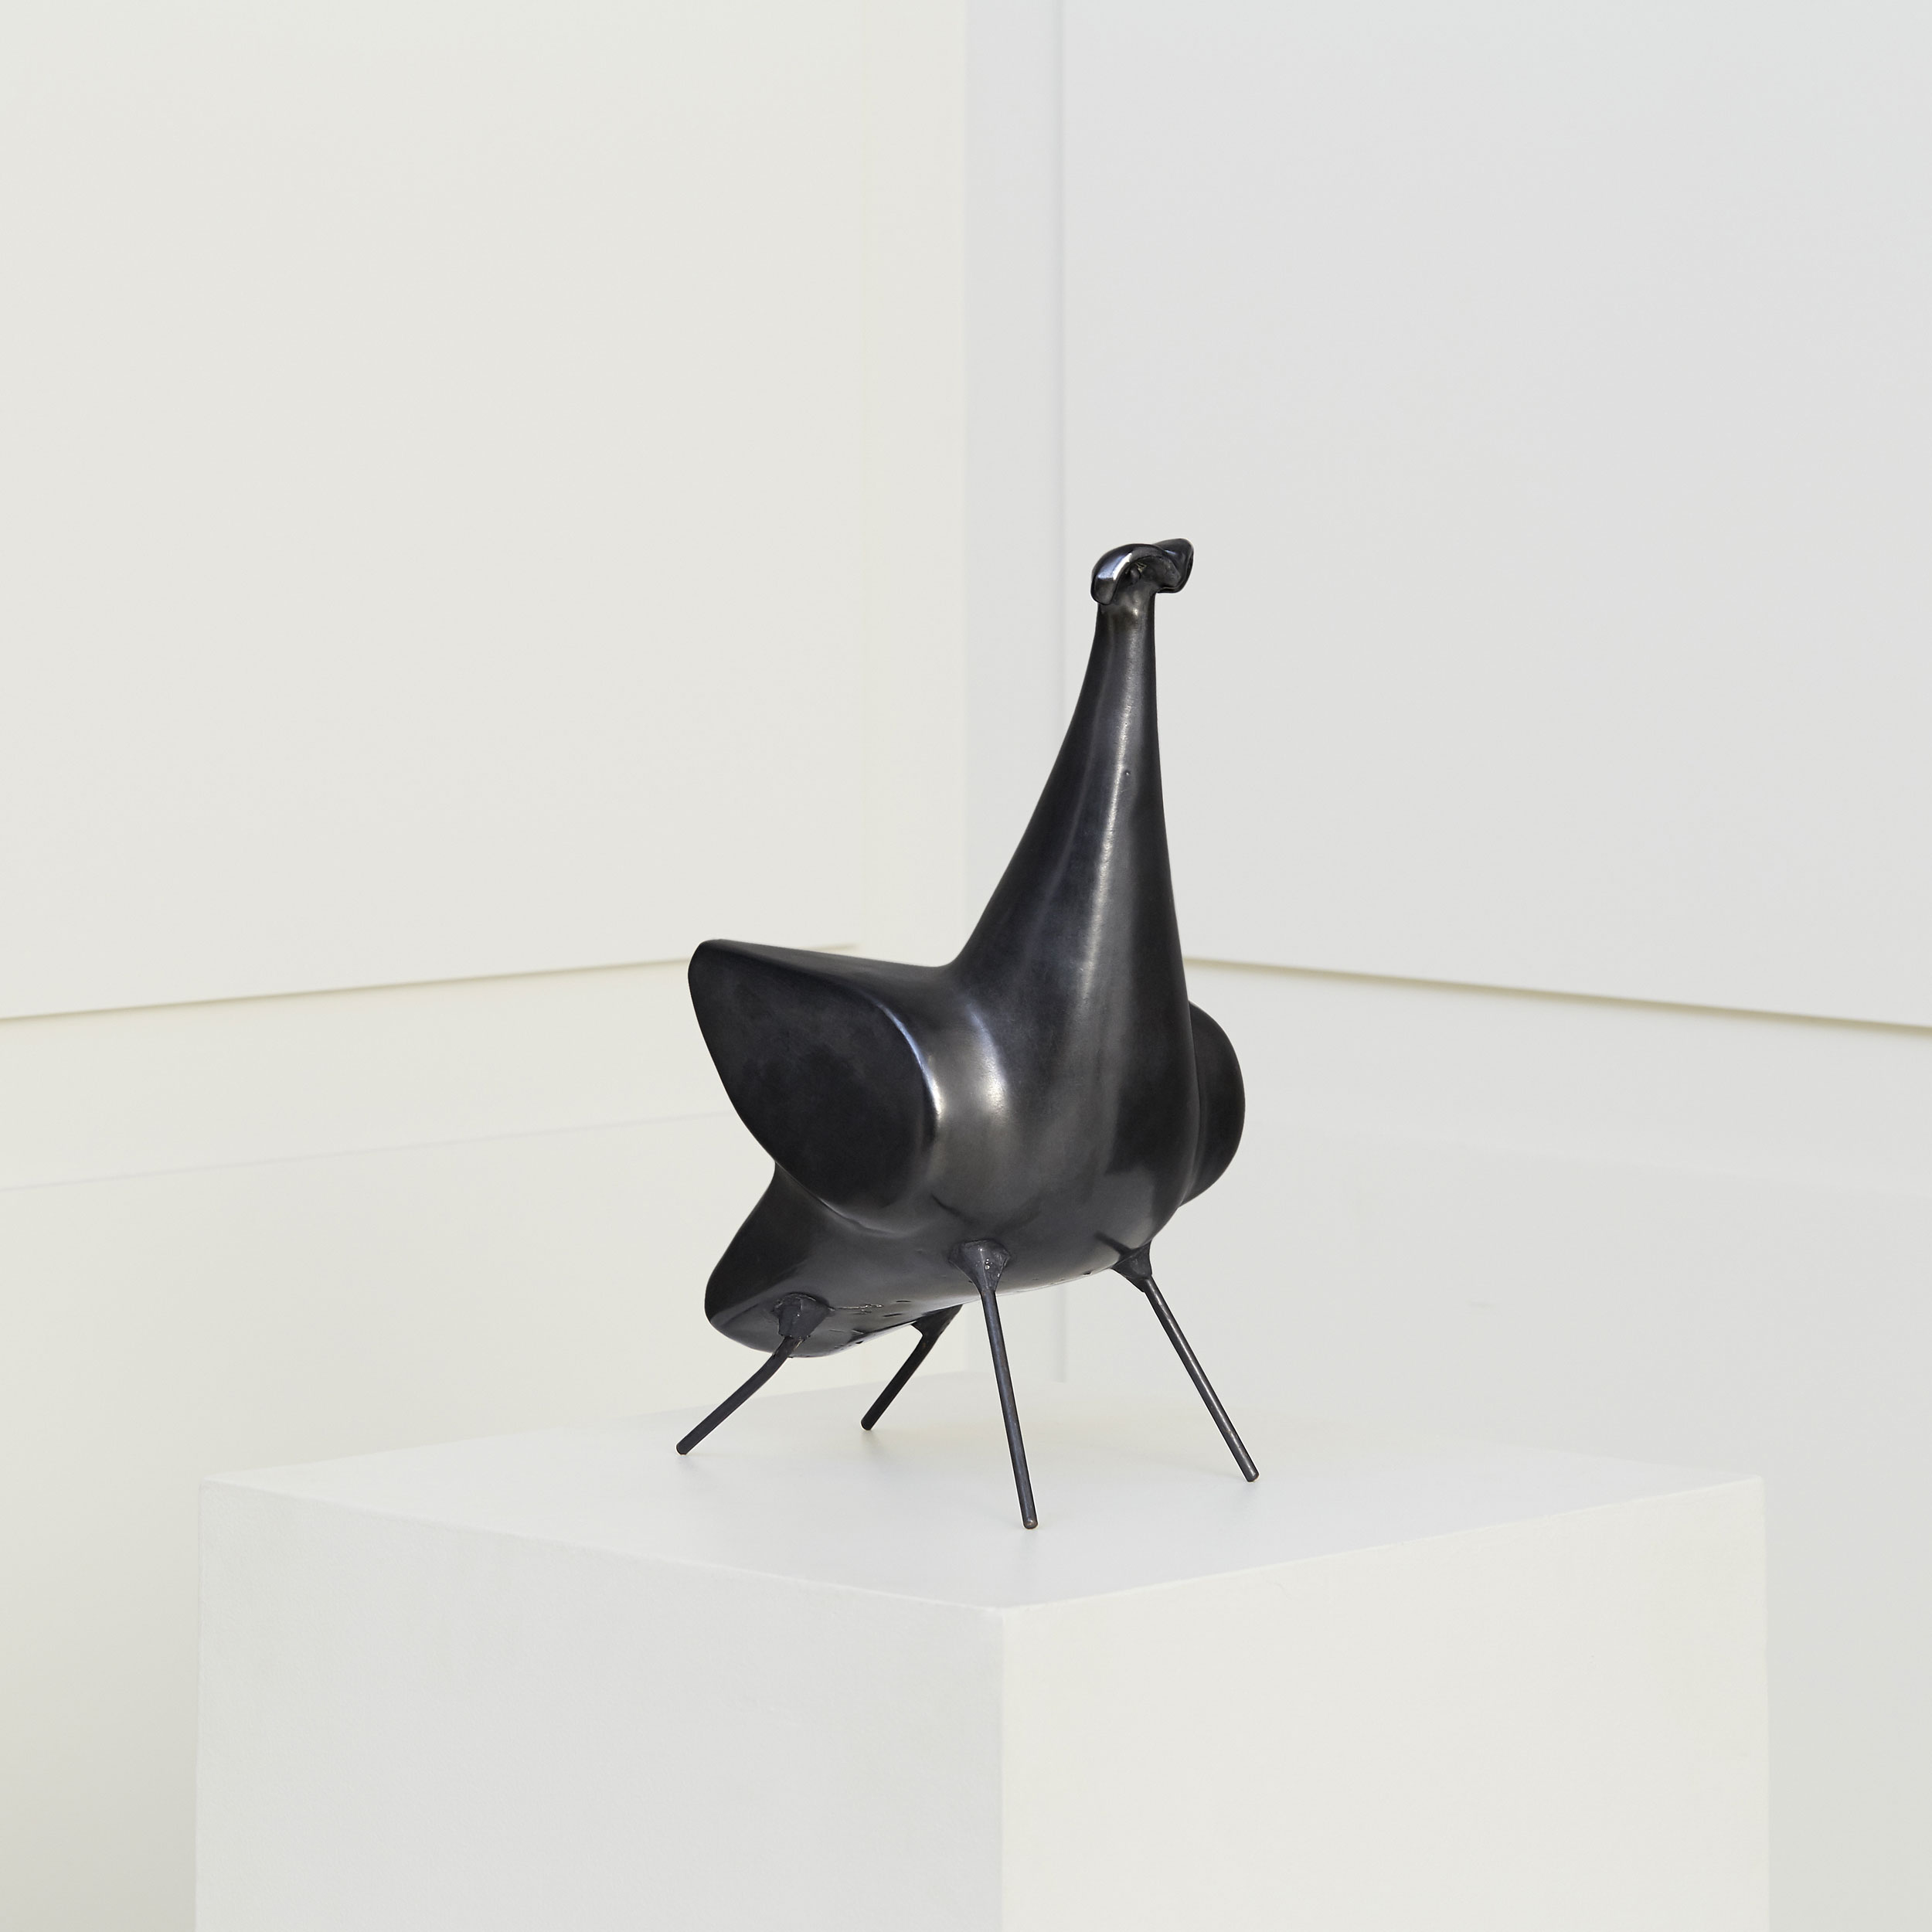 «4-legs bird» sculpture